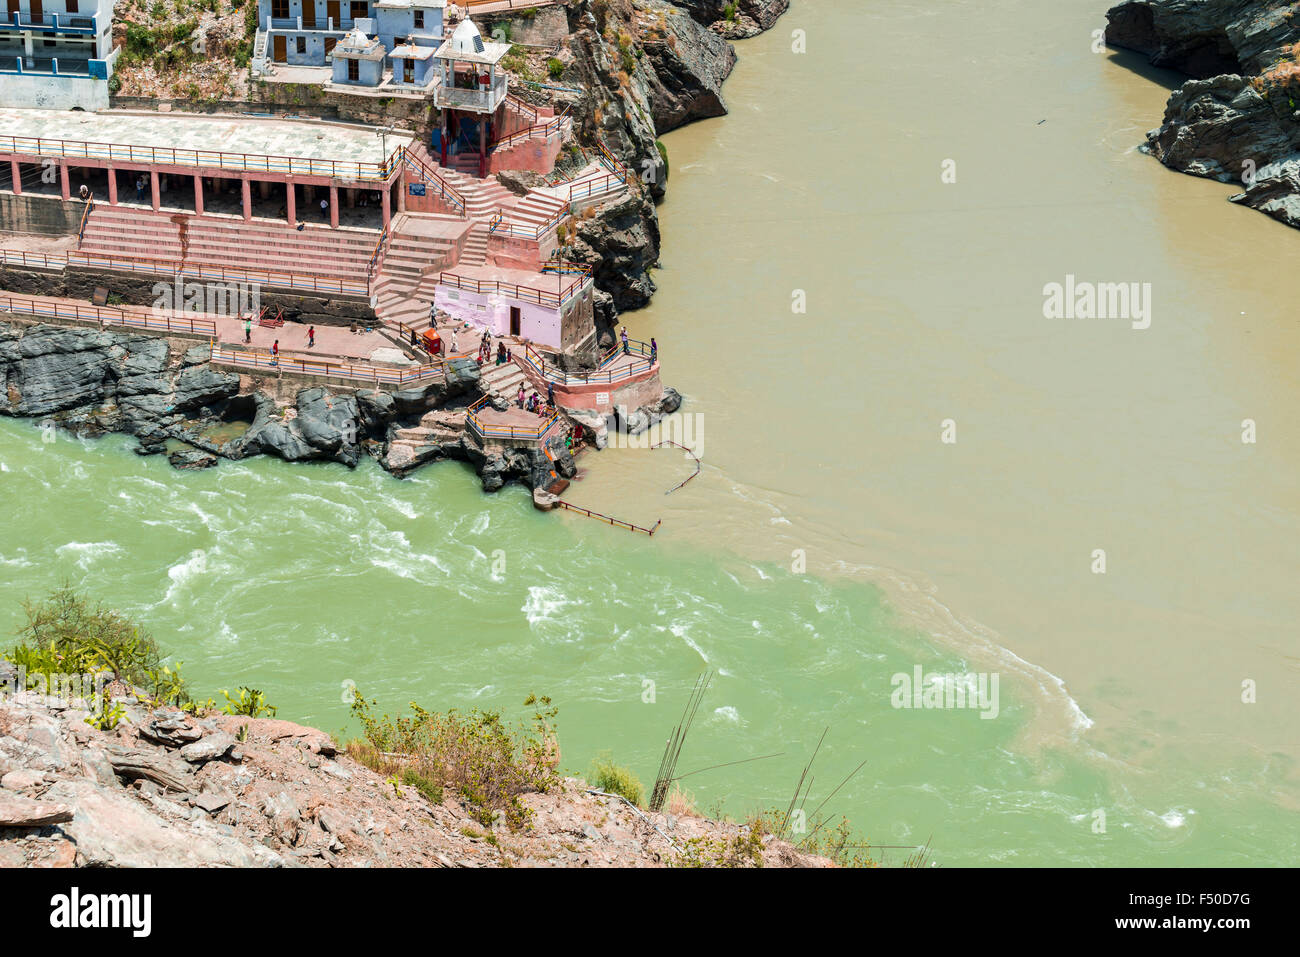 Le sangam à dev prayag, le confluent des rivières et bhaghirati alakananda, l'endroit où le fleuve saint Ganges commence Banque D'Images